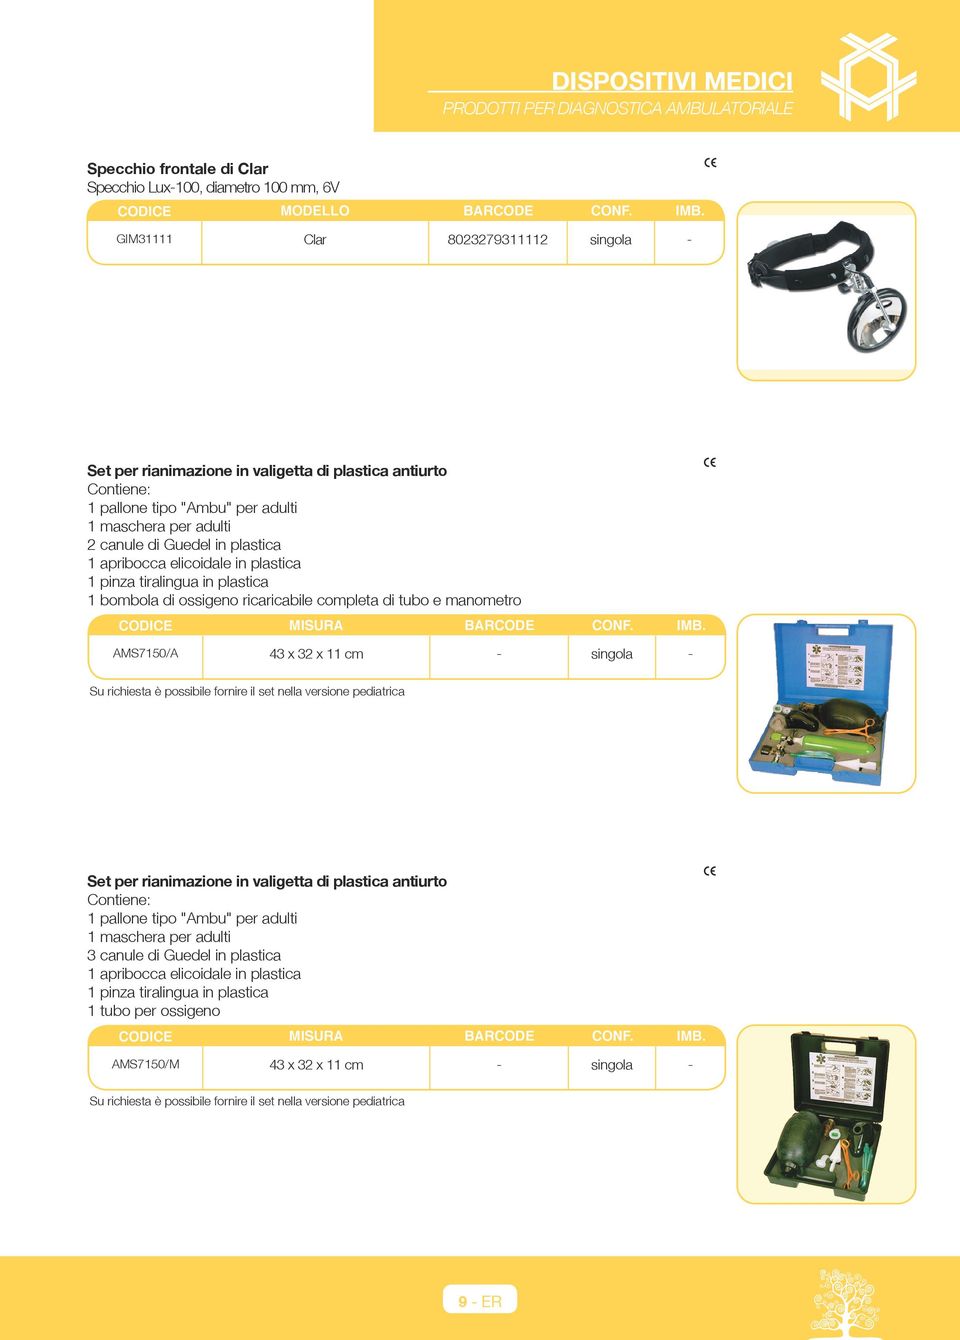 AMS7150/A 43 x 32 x 11 cm - singola - Su richiesta è possibile fornire il set nella versione pediatrica Set per rianimazione in valigetta di plastica antiurto Contiene: 1 pallone tipo "Ambu" per